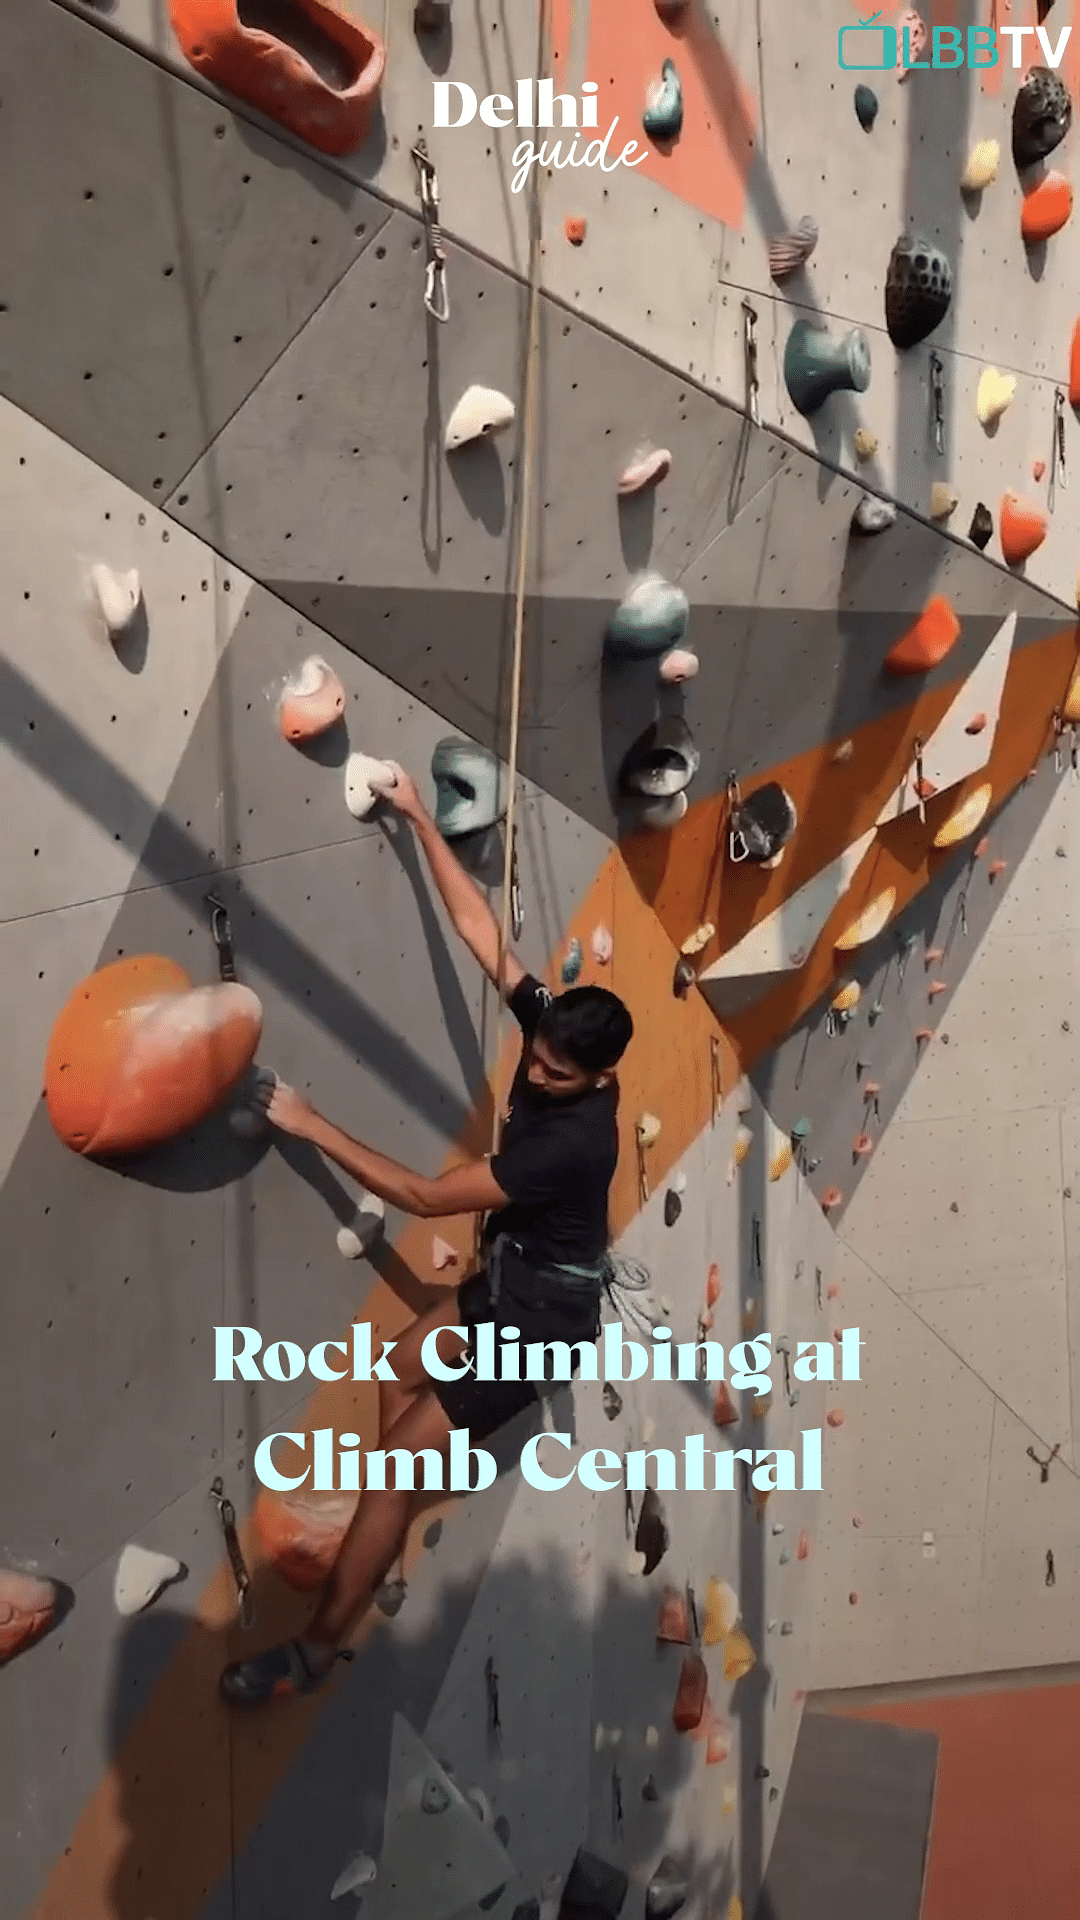 Climbing hold,Light,Climbing,Line,Rock climbing,Leisure,Recreation,Art,Sport climbing,Space